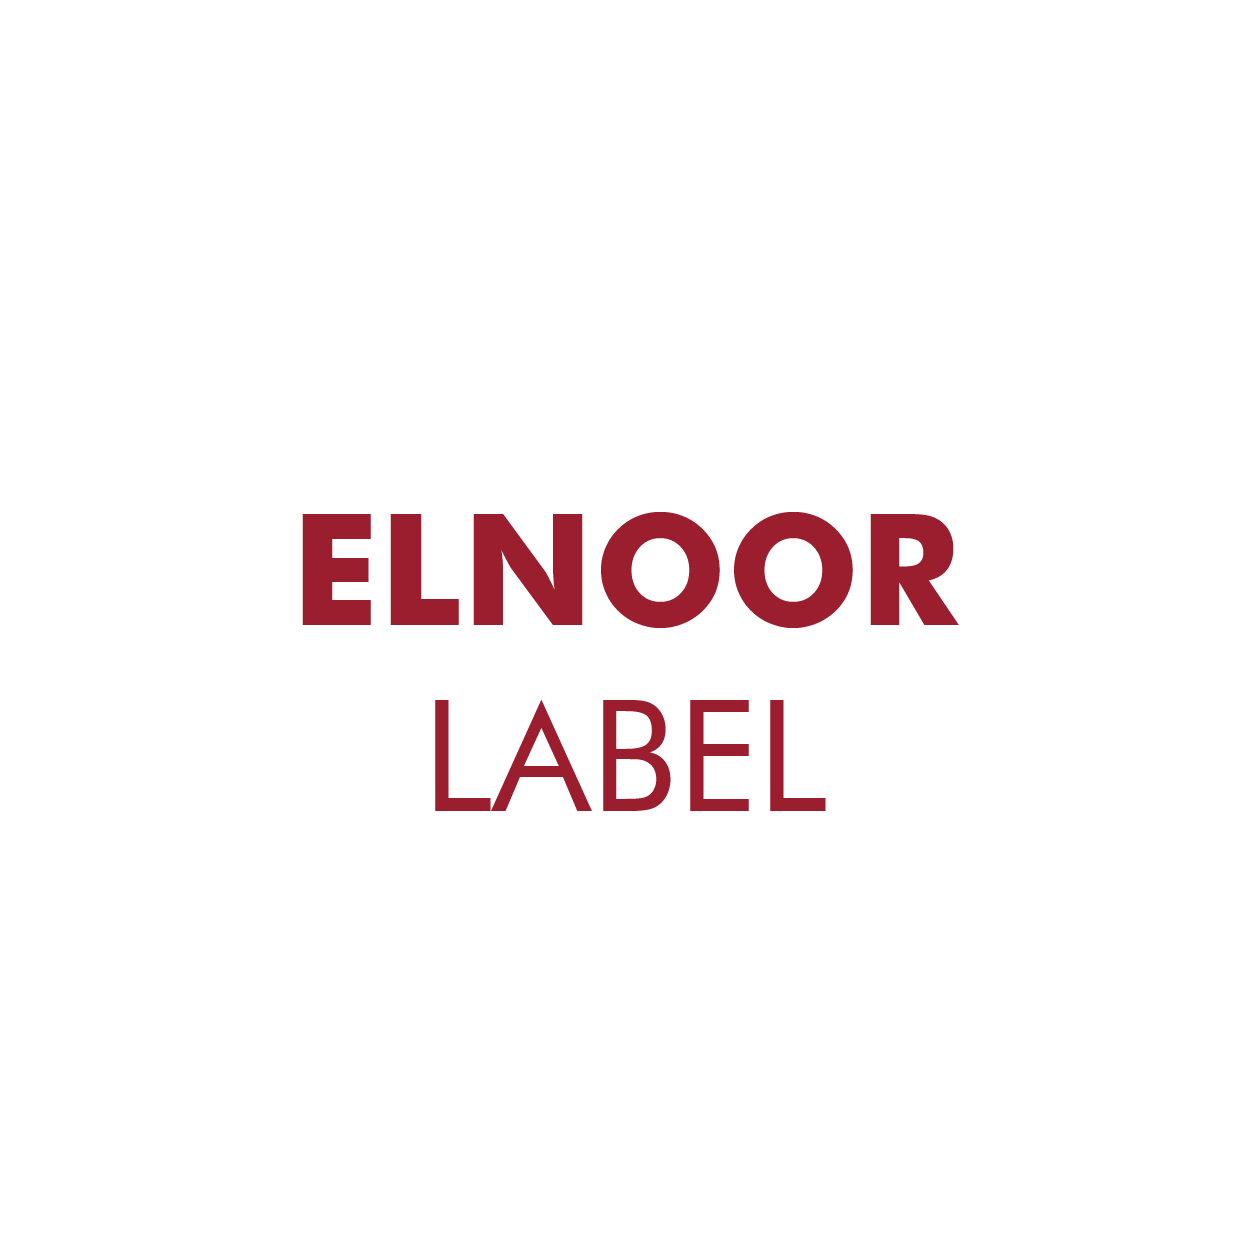 Elnoor Label